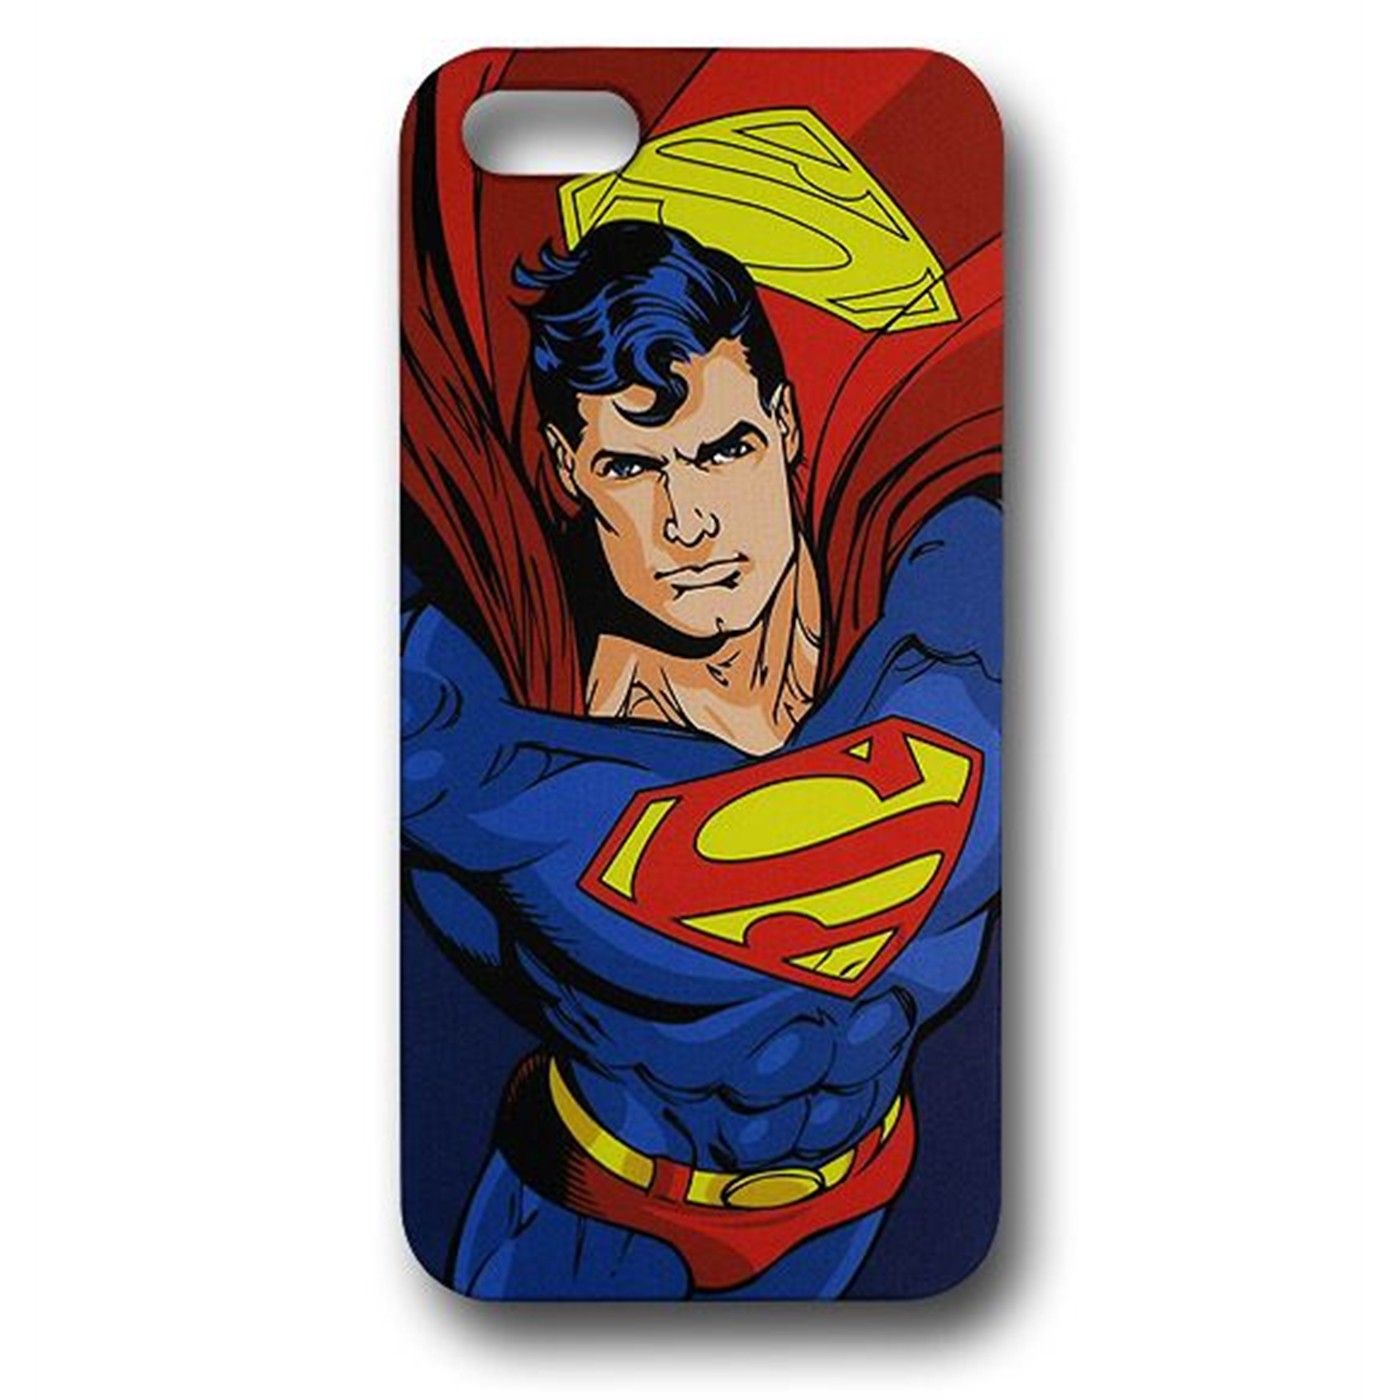 Superman Image iPhone 5 Hard Case